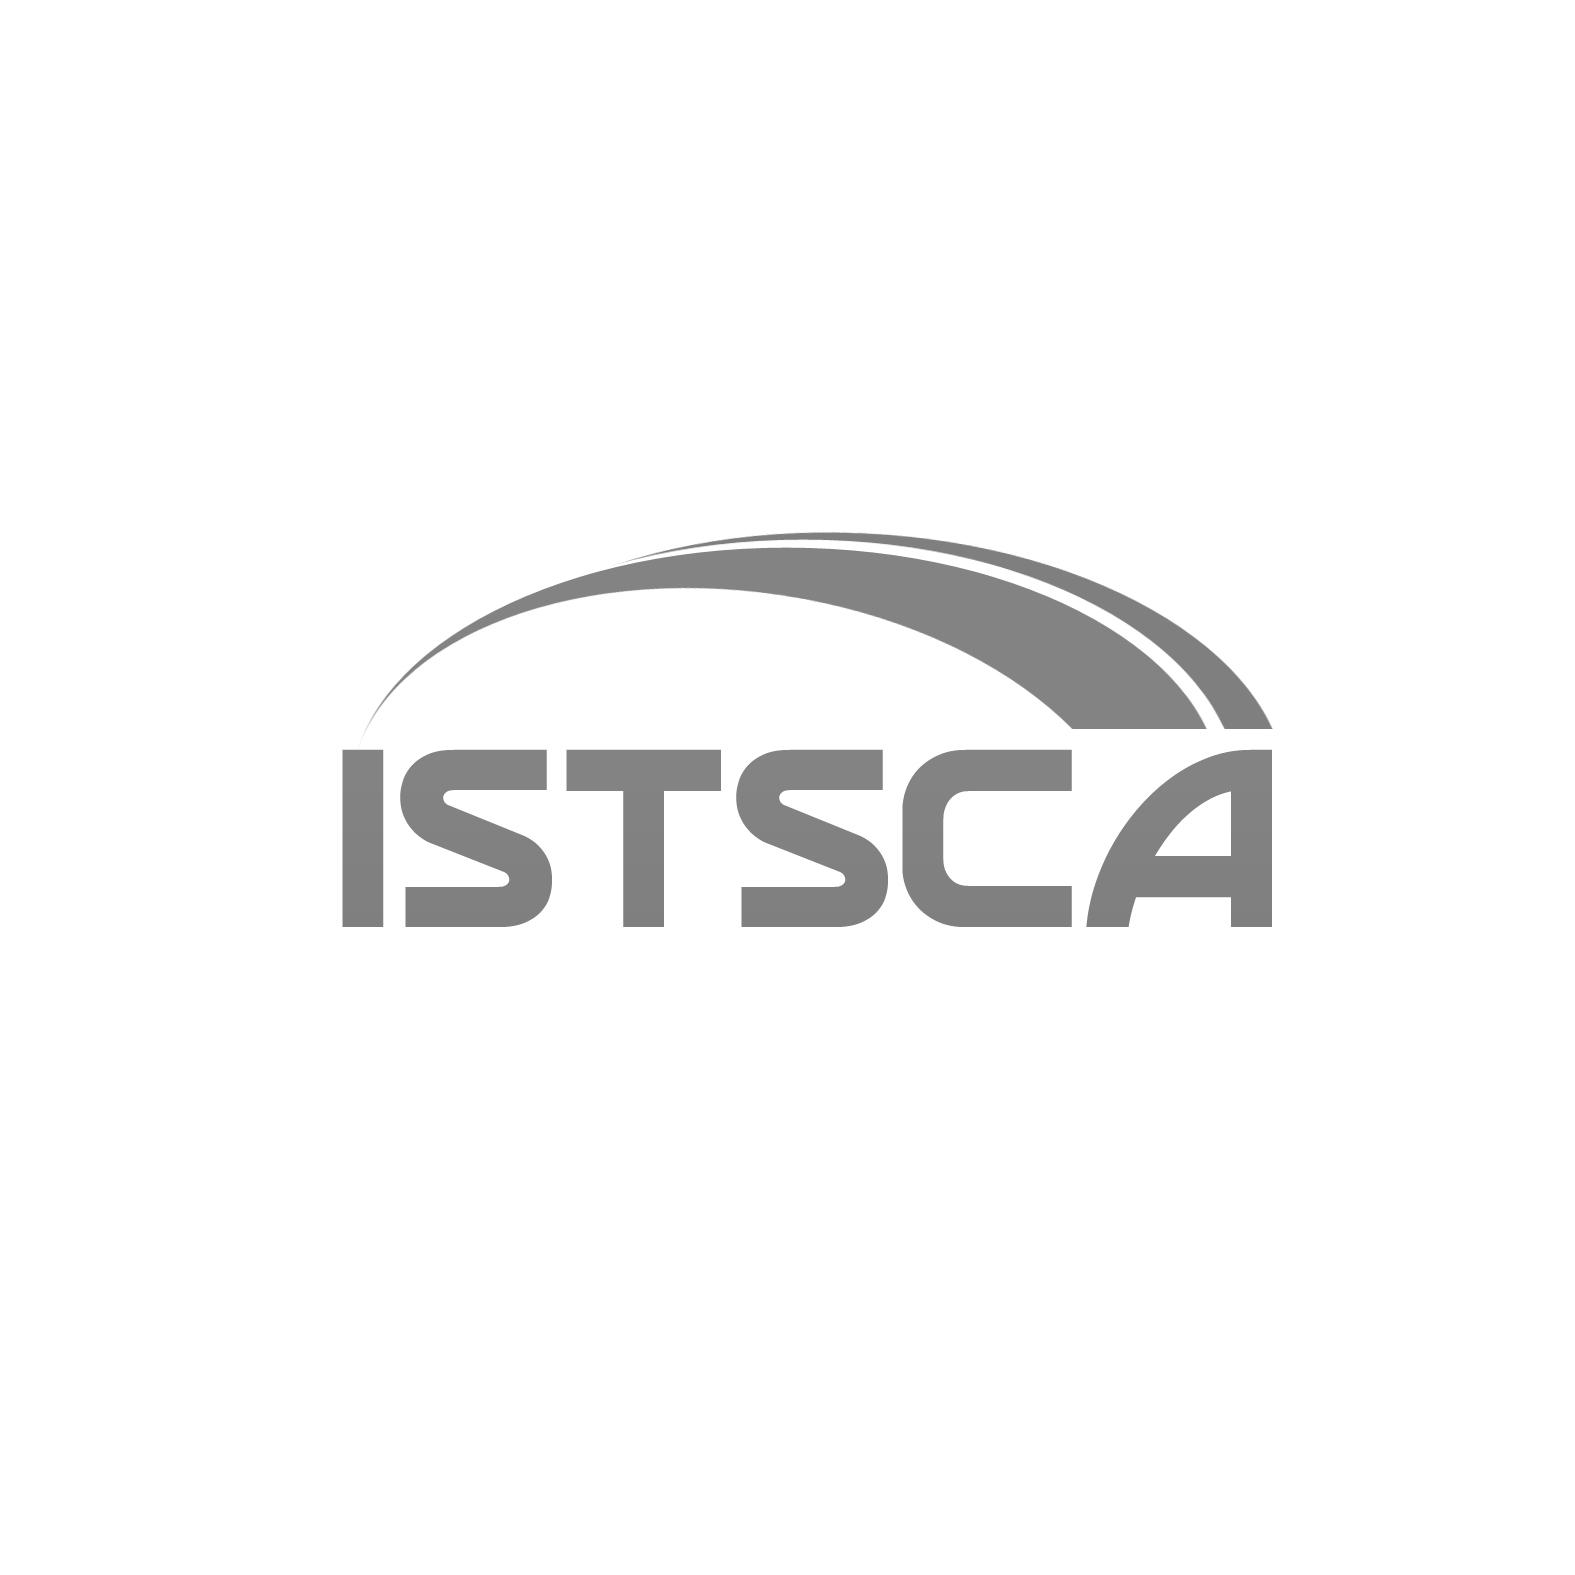 18类-箱包皮具ISTSCA商标转让